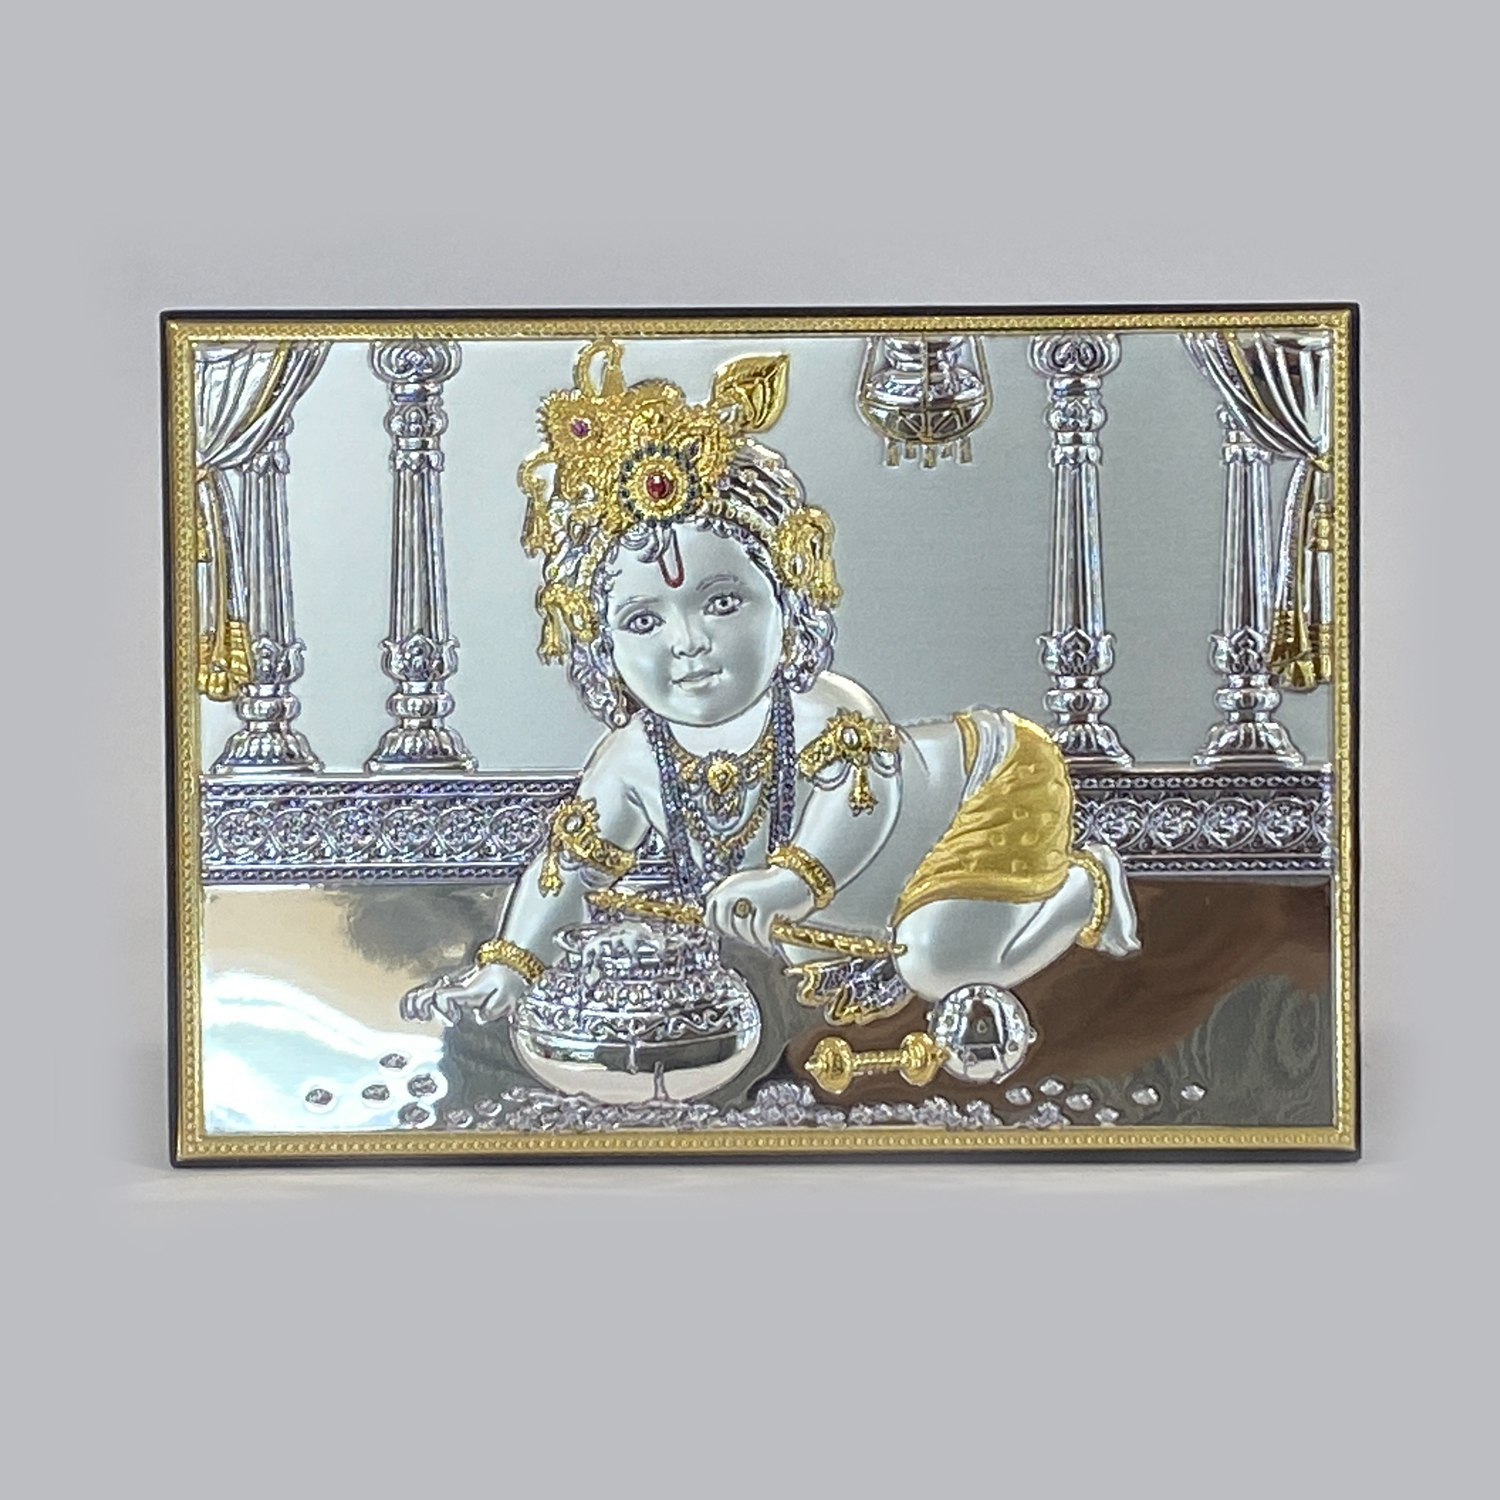 A Silver Tabletop Plaque Ladoo Gopal | 5.2 Inch